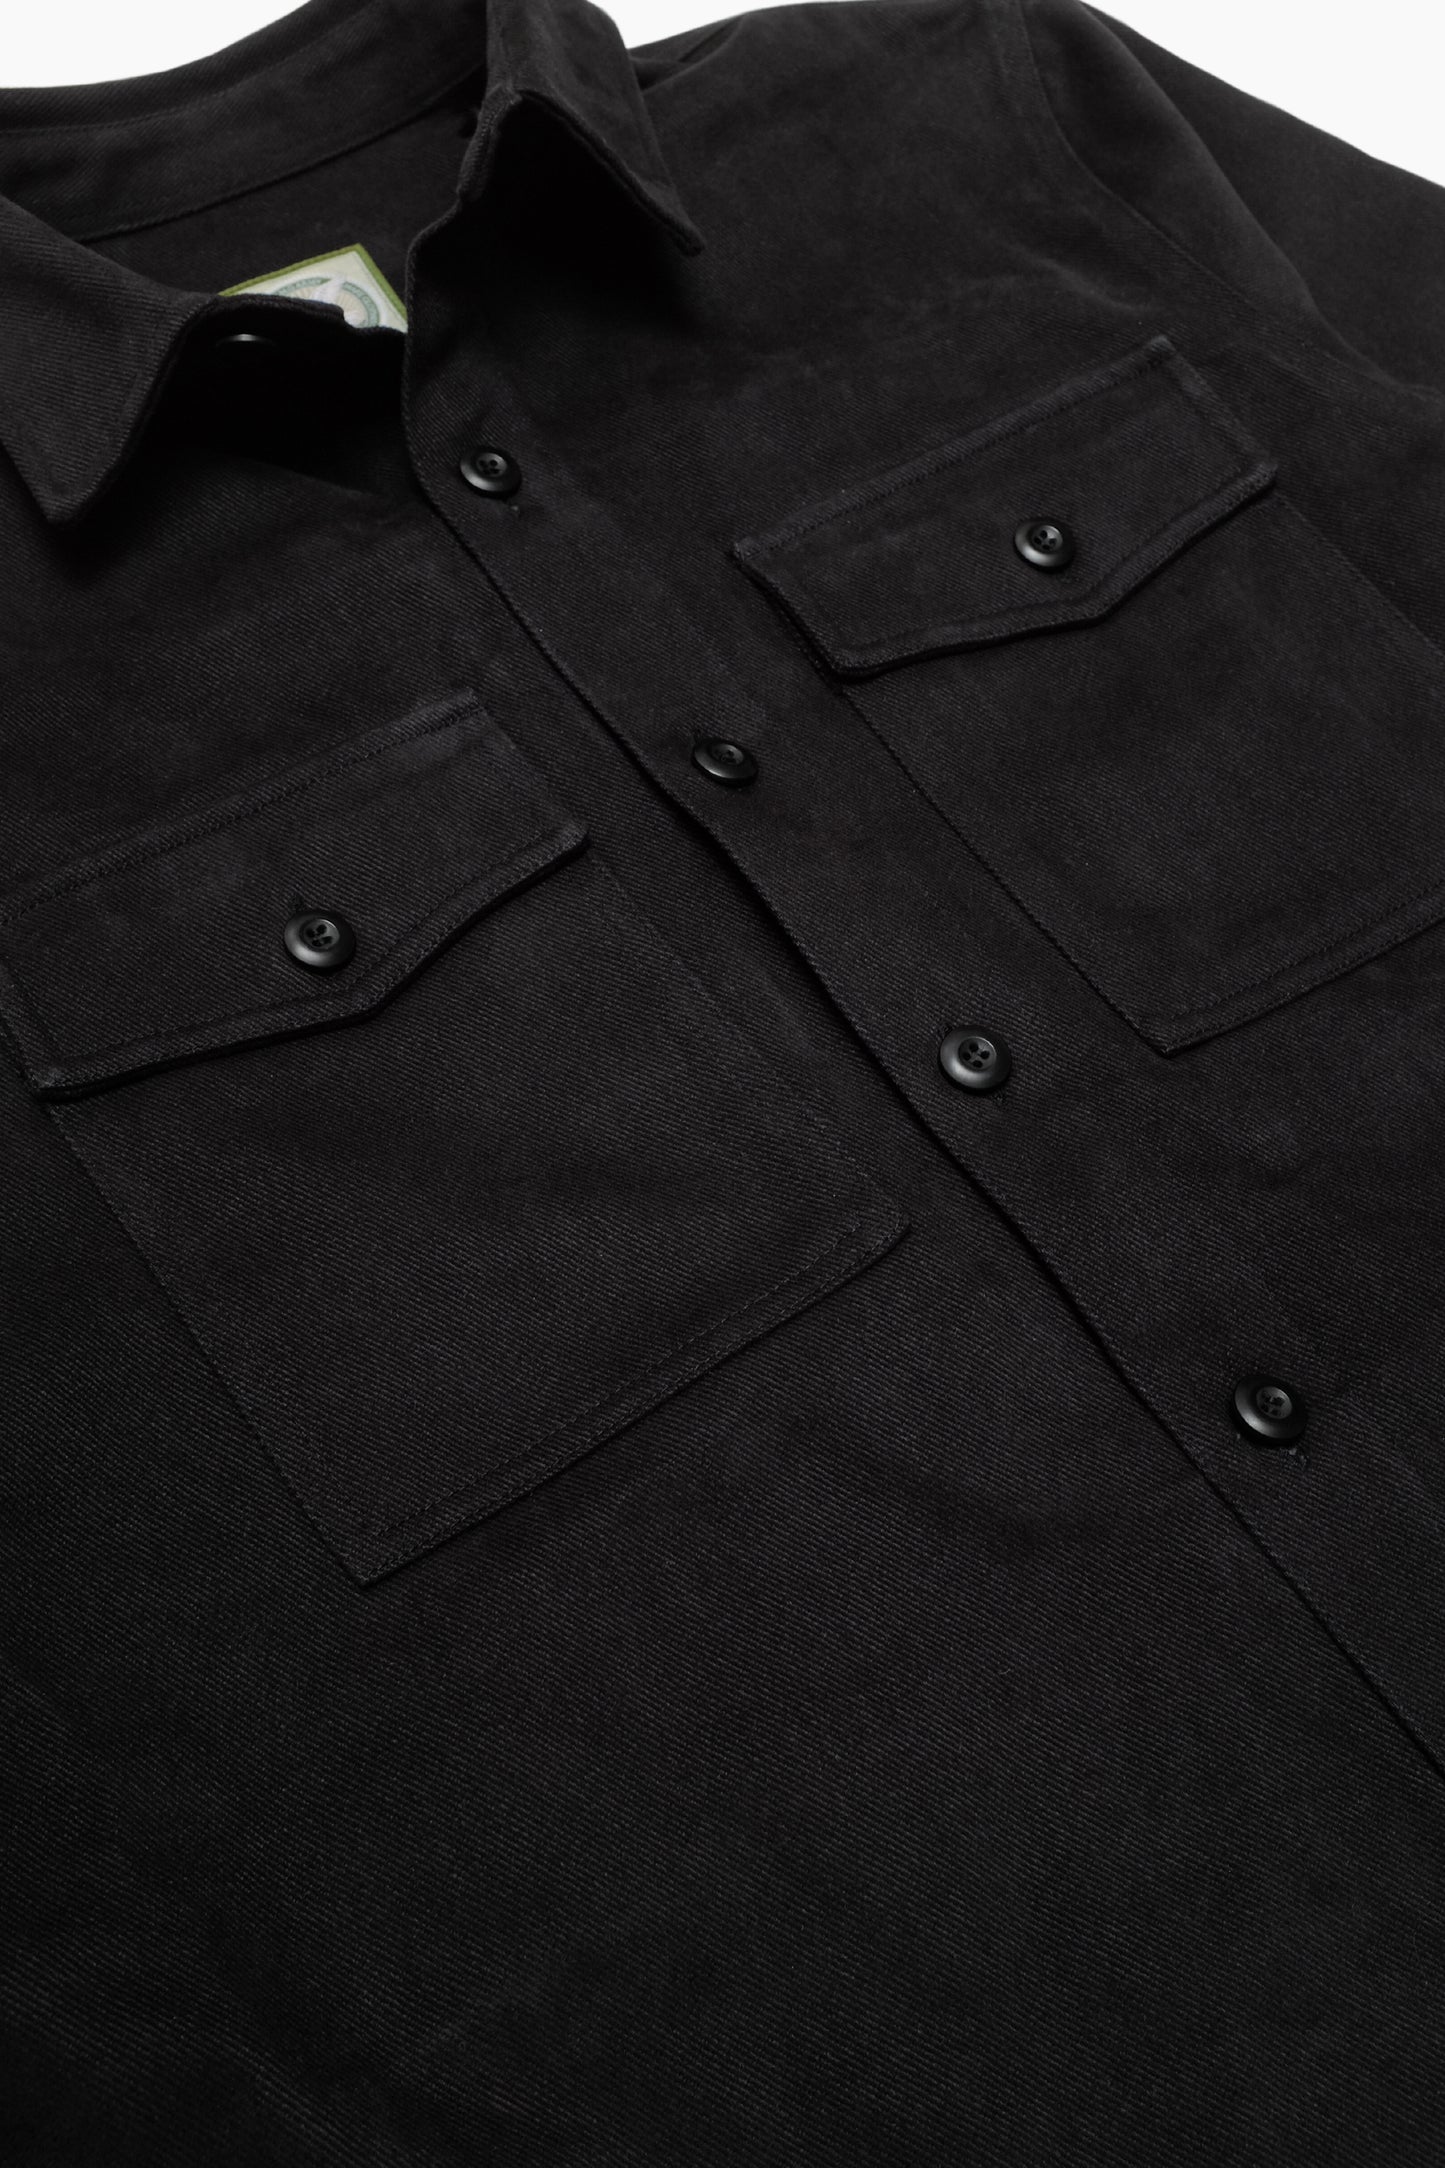 Veste Military Field - Coton Faded Black